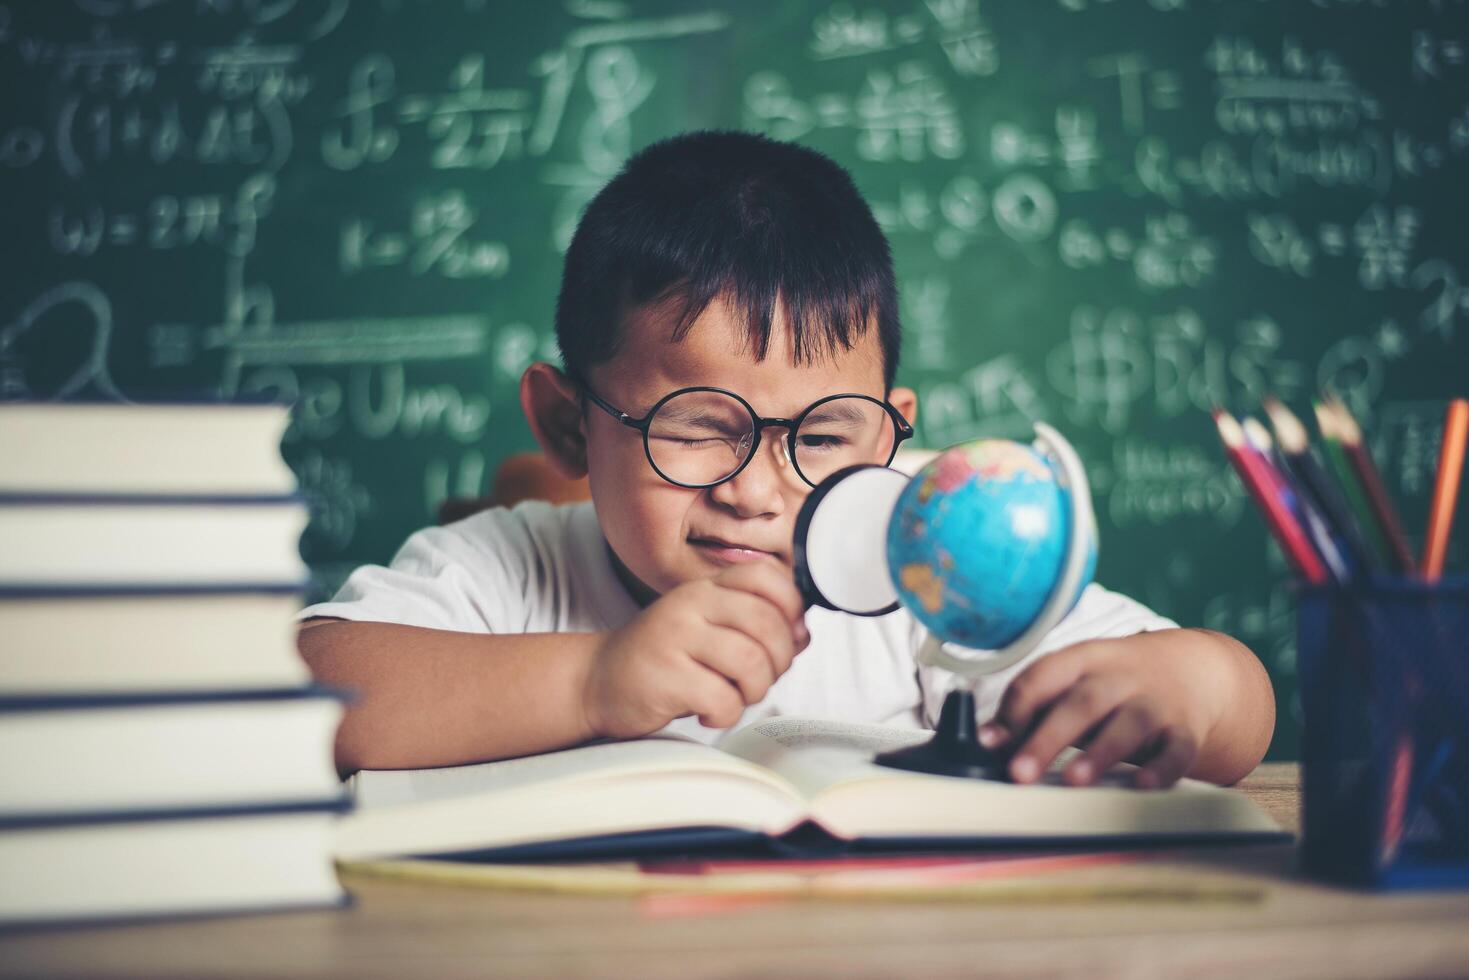 bambino che osserva o studia il modello educativo del globo in classe. foto